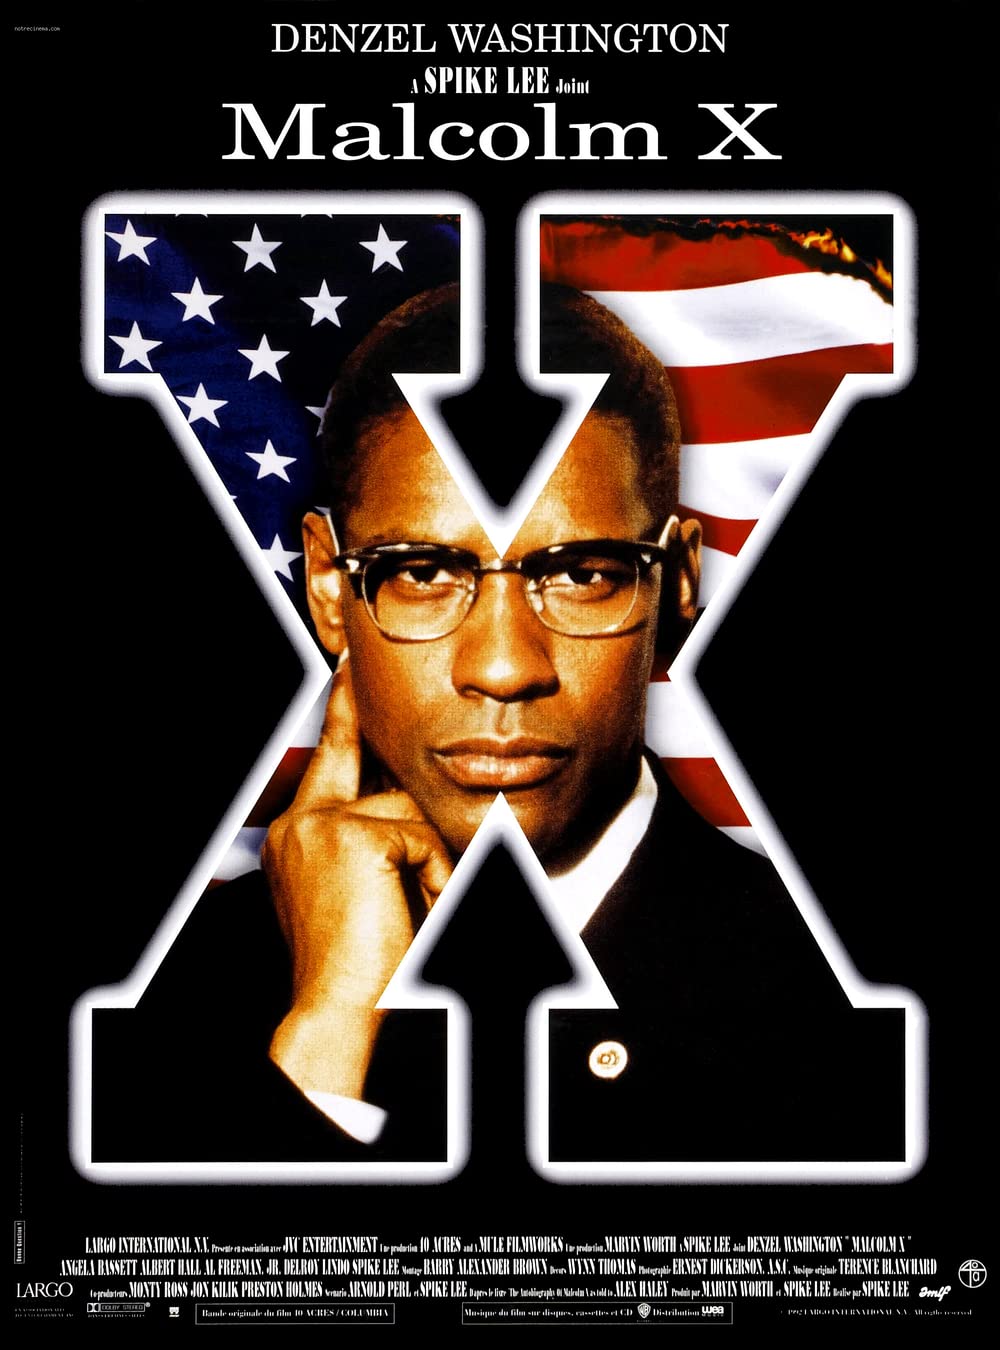 Filmbeschreibung zu Malcolm X